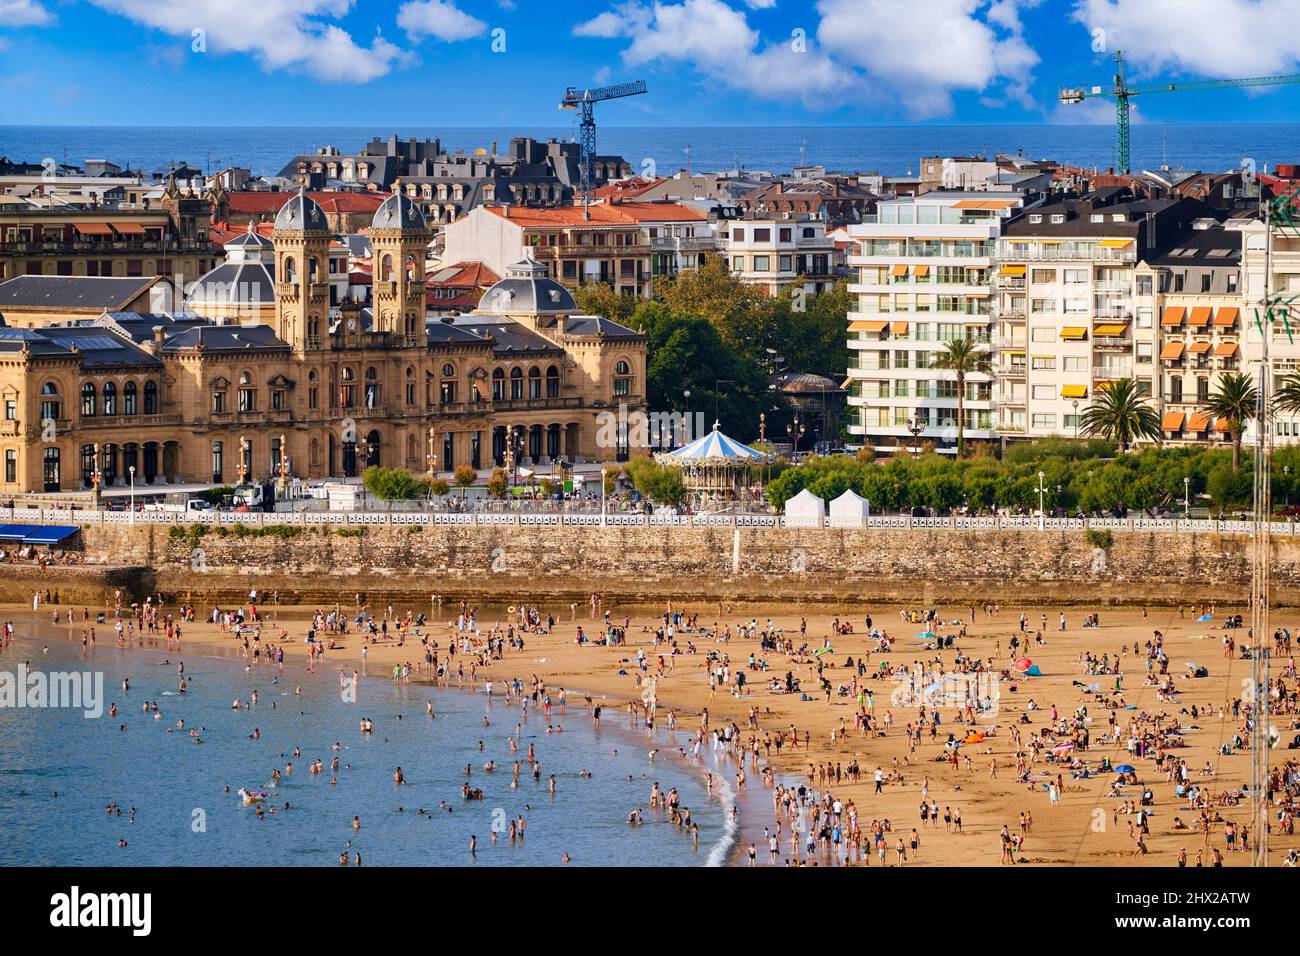 Blick auf den Strand von La Concha, Rathaus Gebäude in den Alderdi Eder Gärten, Donostia, San Sebastian, kosmopolitische Stadt mit 187.000 Einwohnern, bekannt für Stockfoto